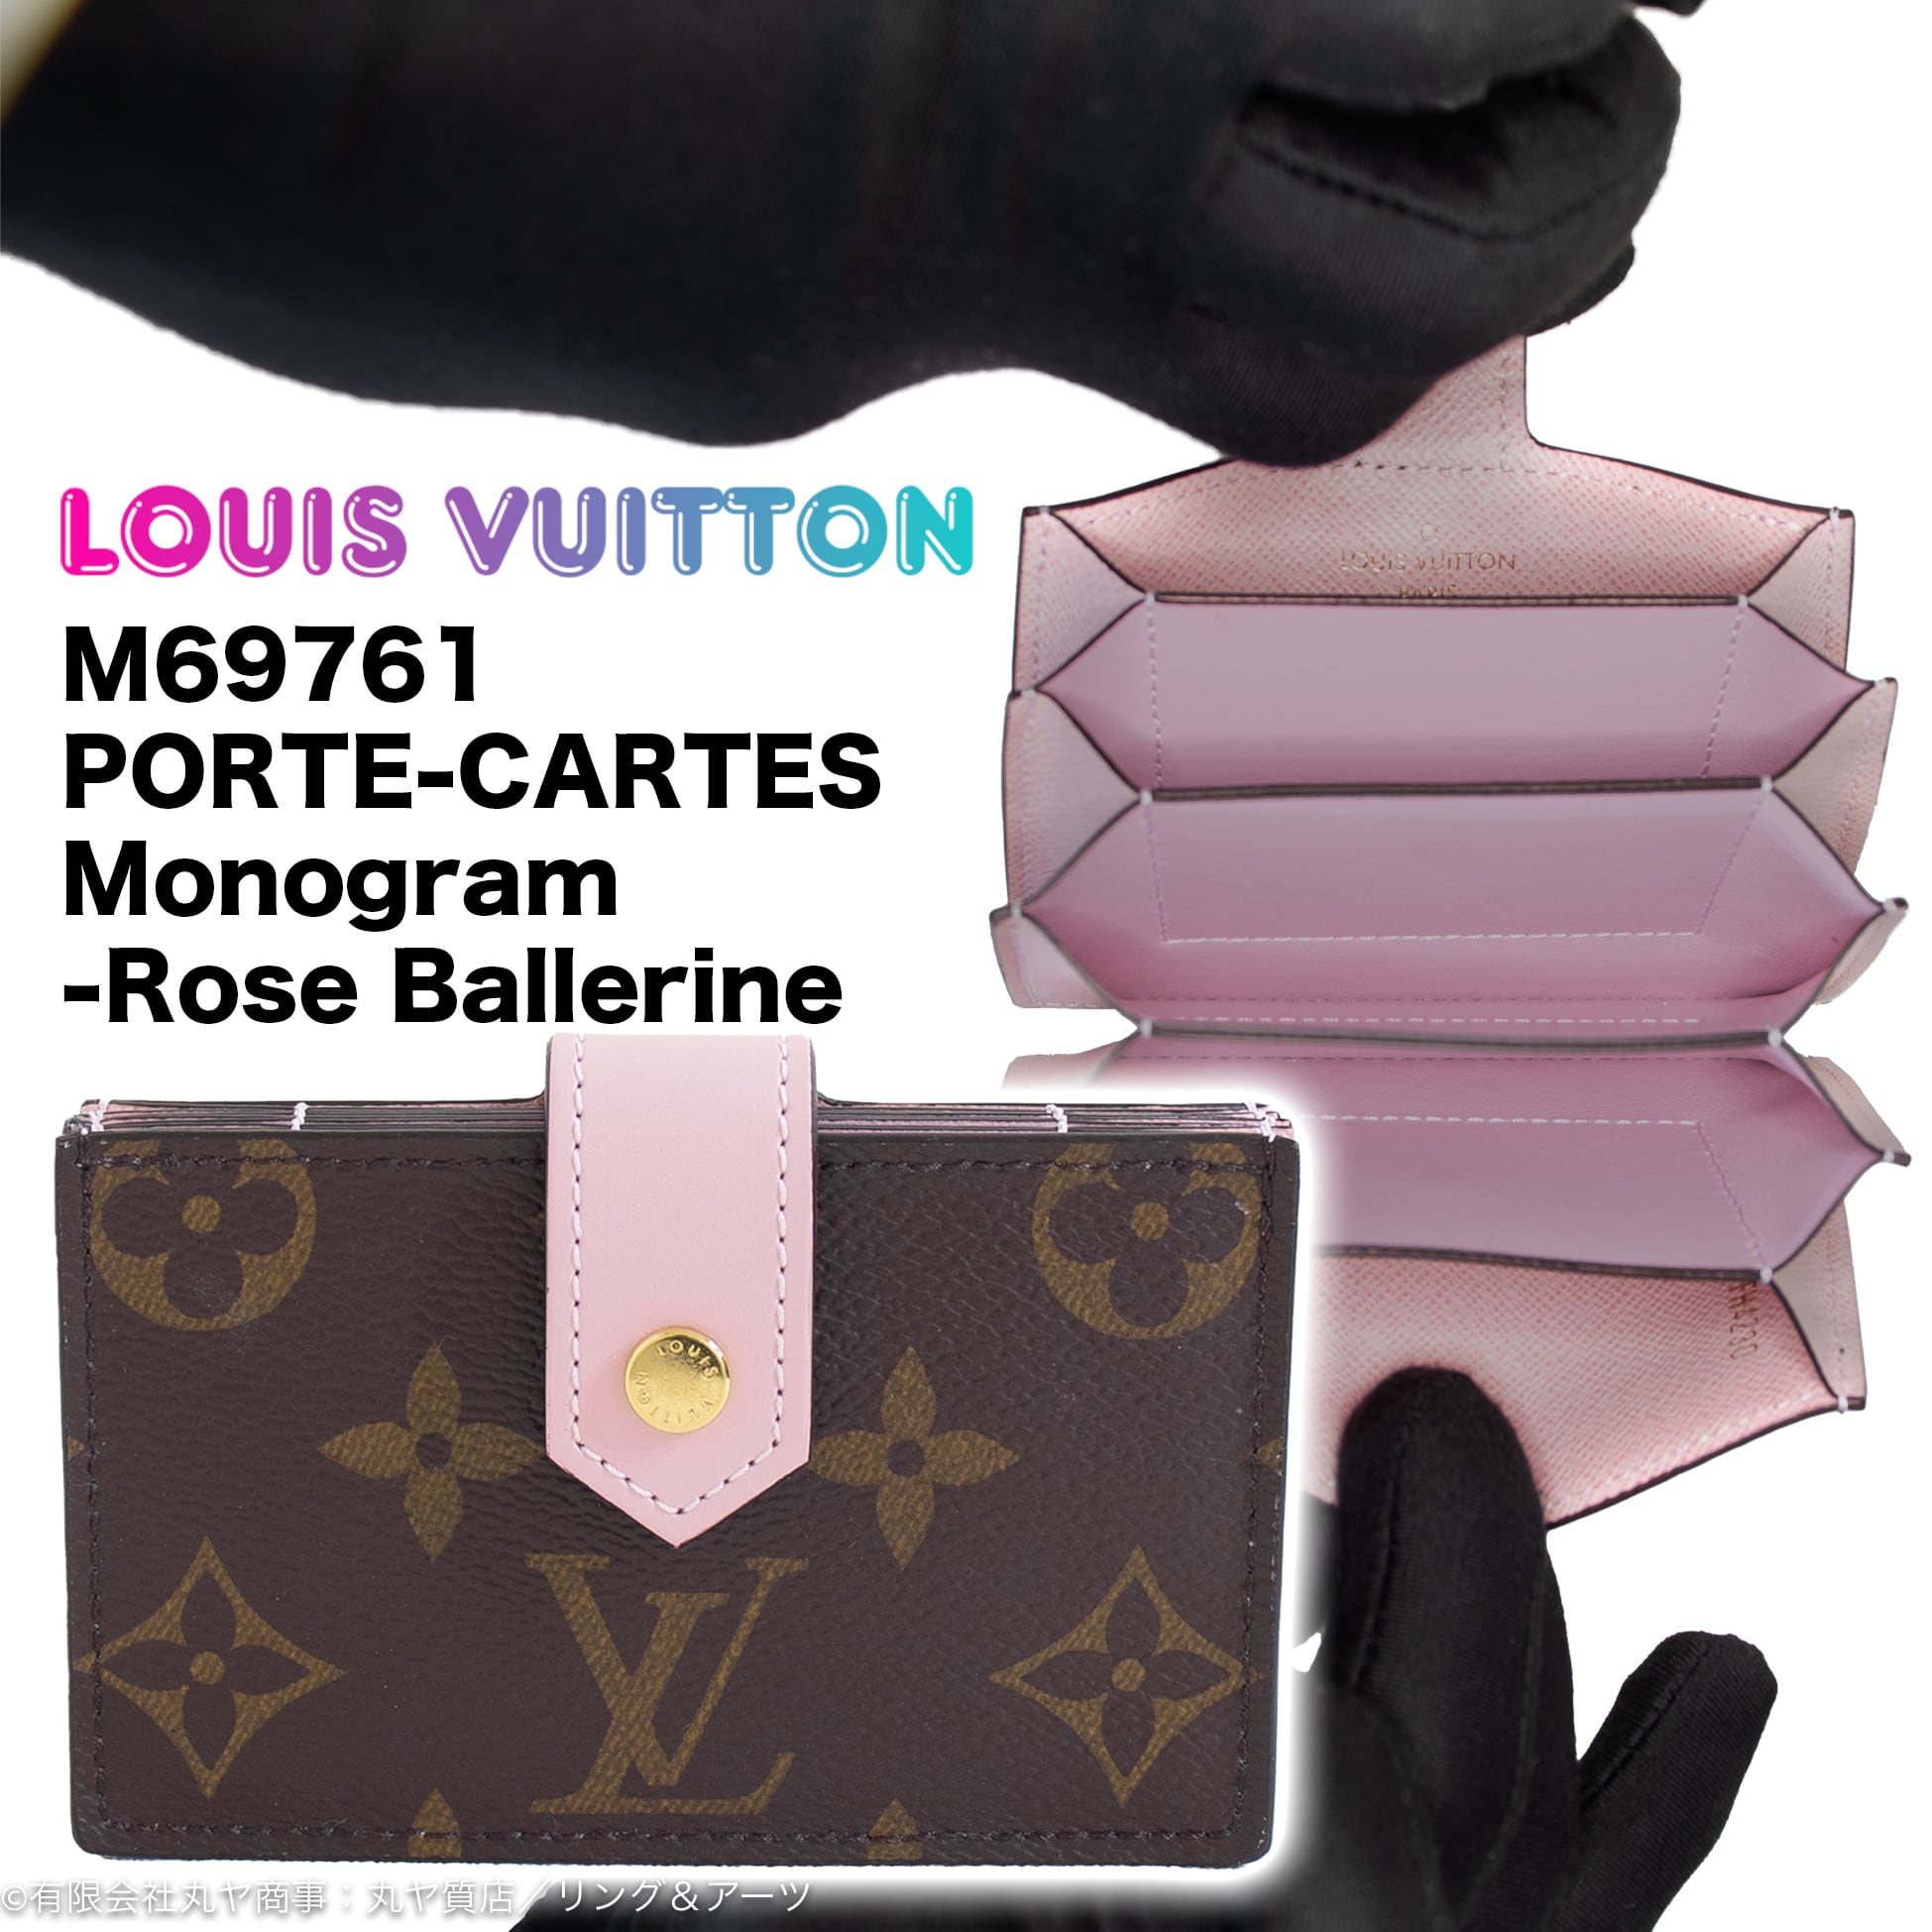 ルイ•ヴィトン:ポルト カルト/モノグラムライン(ローズ・バレリーヌ色)/M69761型/カードケース/LOUIS VUI